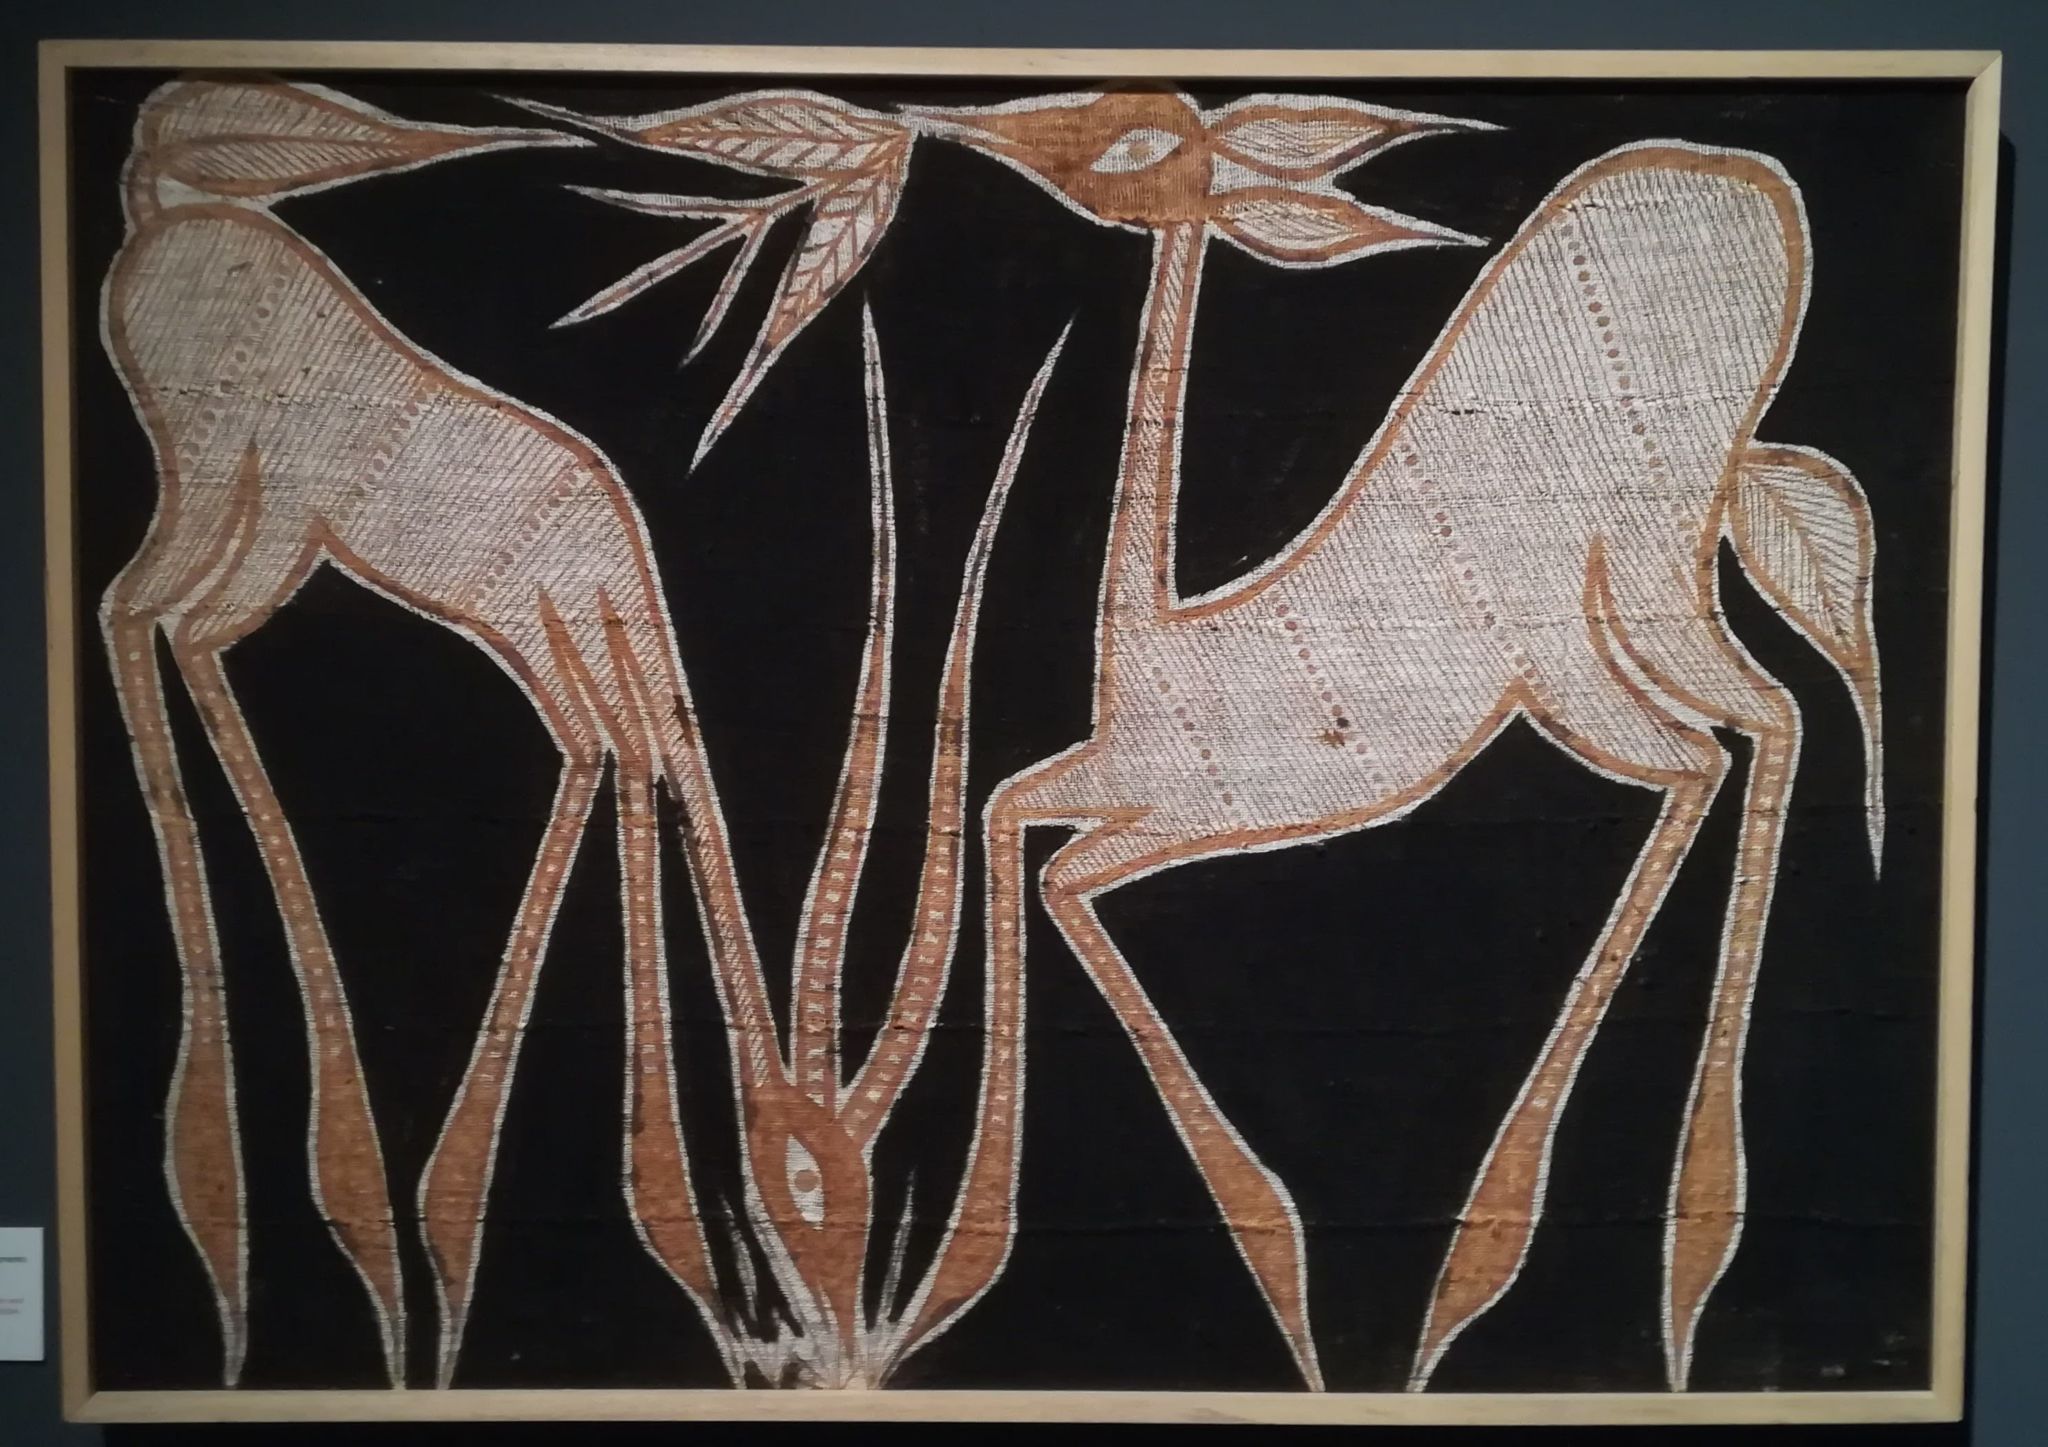 Tela korhogo de la cultura senufo expuesta en “El lenguaje de las telas” del Museo Nacional de Antropología.